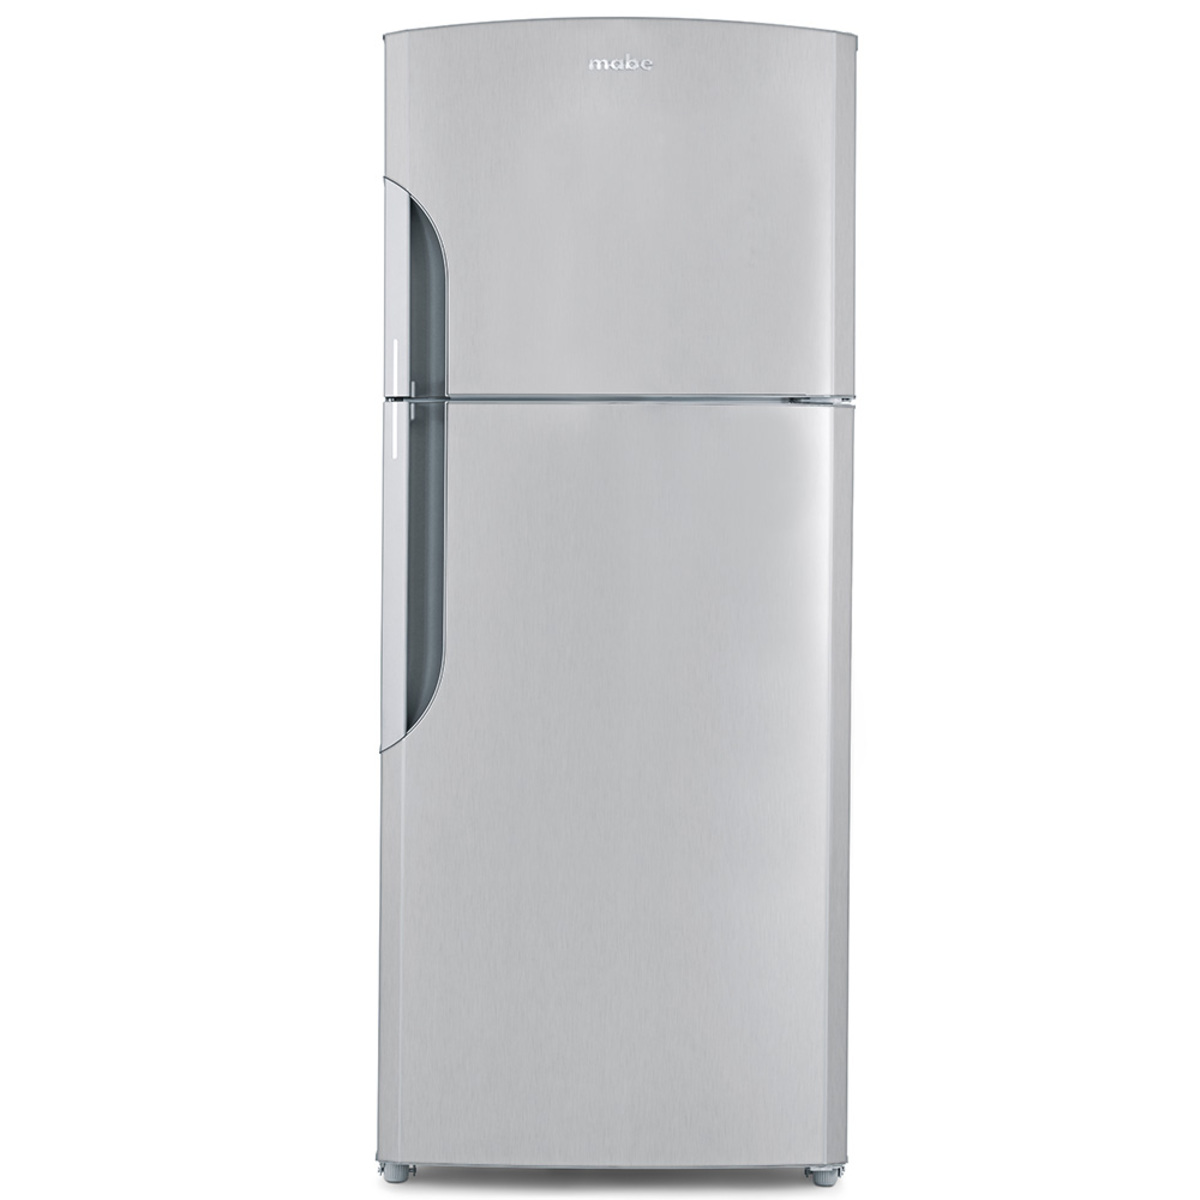 Refrigerador Automático 510 L Extreme Platinum Mabe - RMS1951VMXEA |  Refrigeradores Servicio | Refrigeración Servicio | Servicio Mabe México